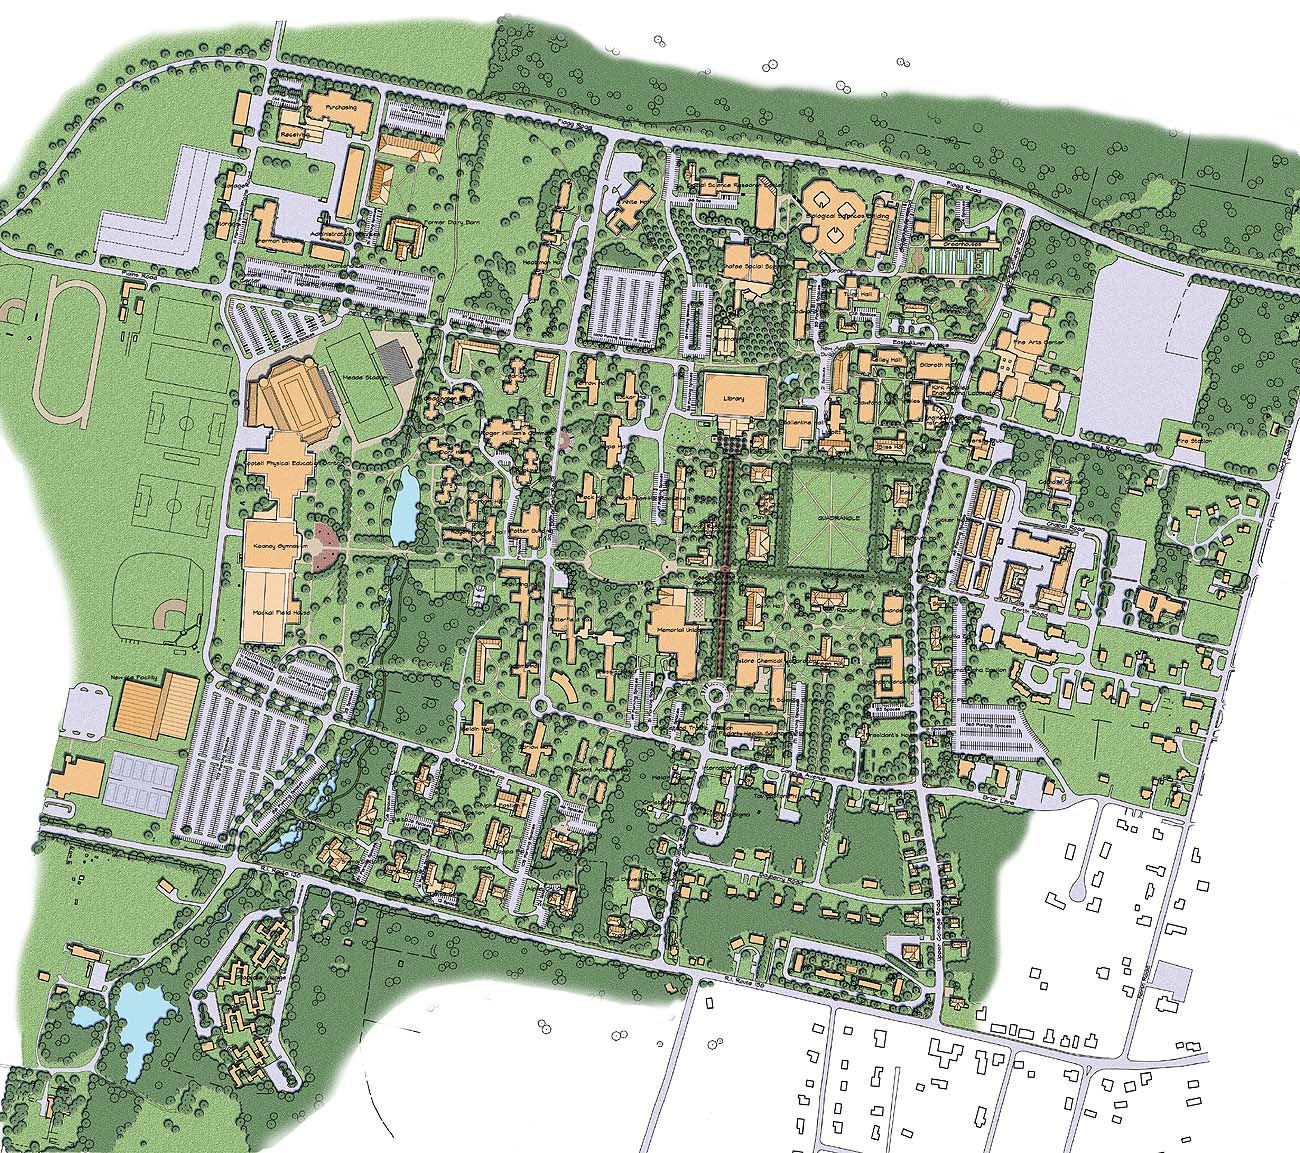 Plan view of Kingston Campus